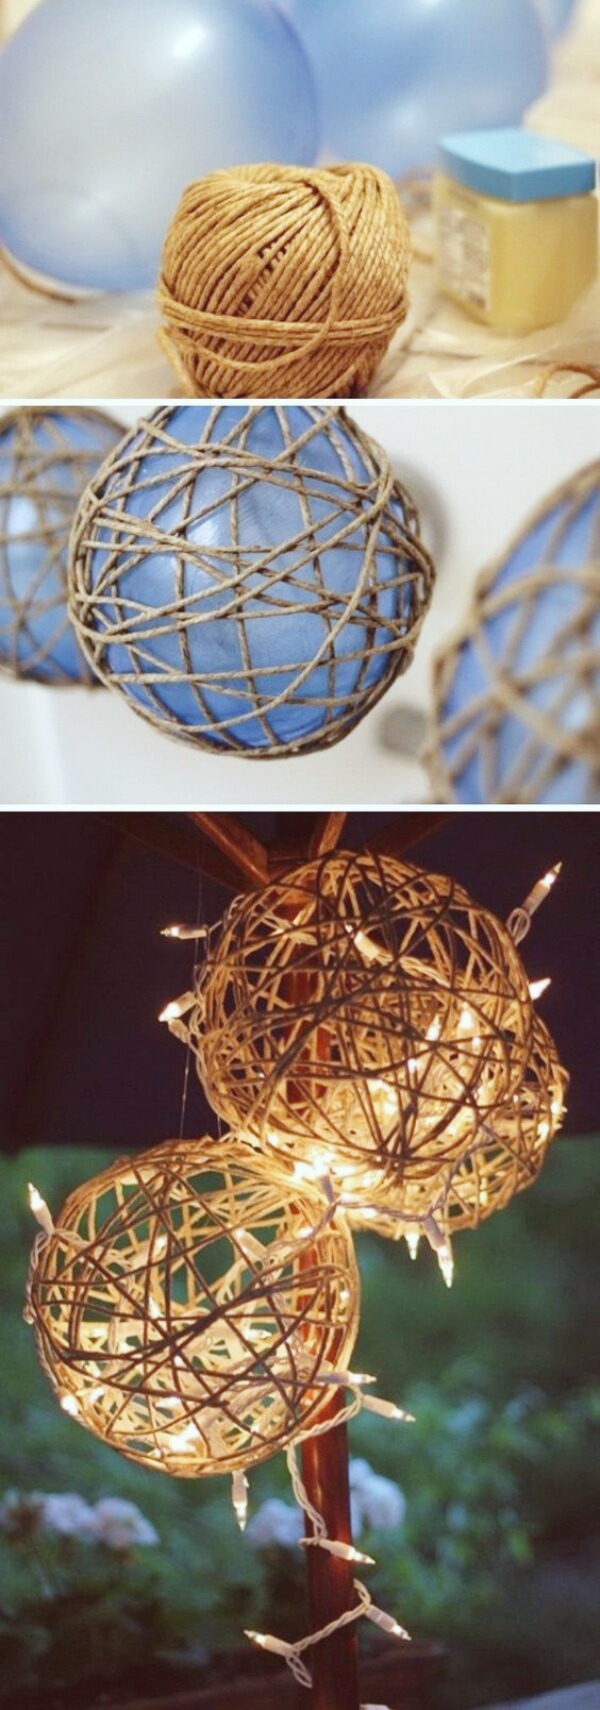 Light Balls | Creative DIY Garden Lantern Ideas - FarmFoodFamily.com